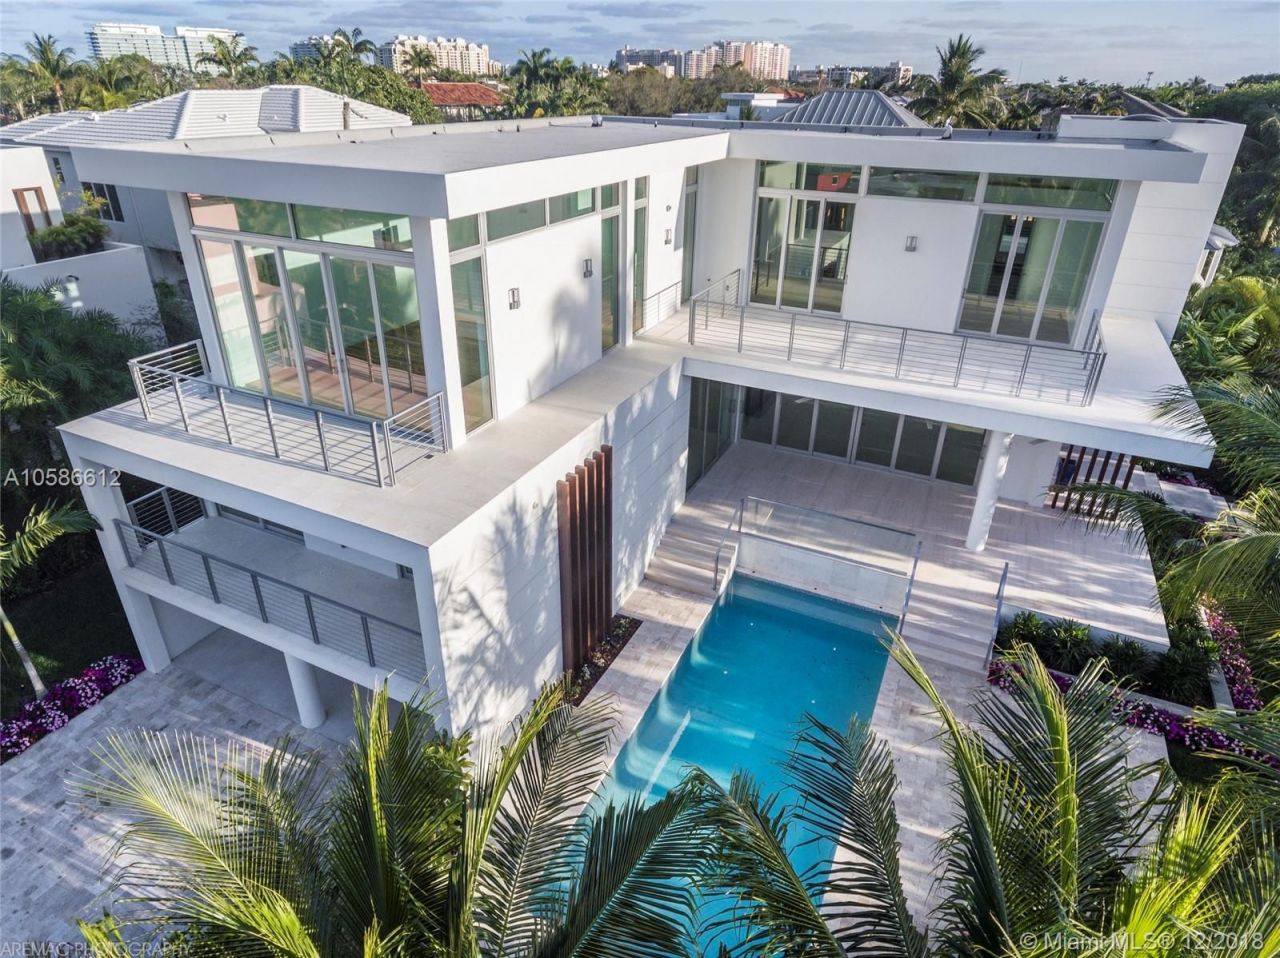 Villa in Miami, USA, 450 sq.m - picture 1